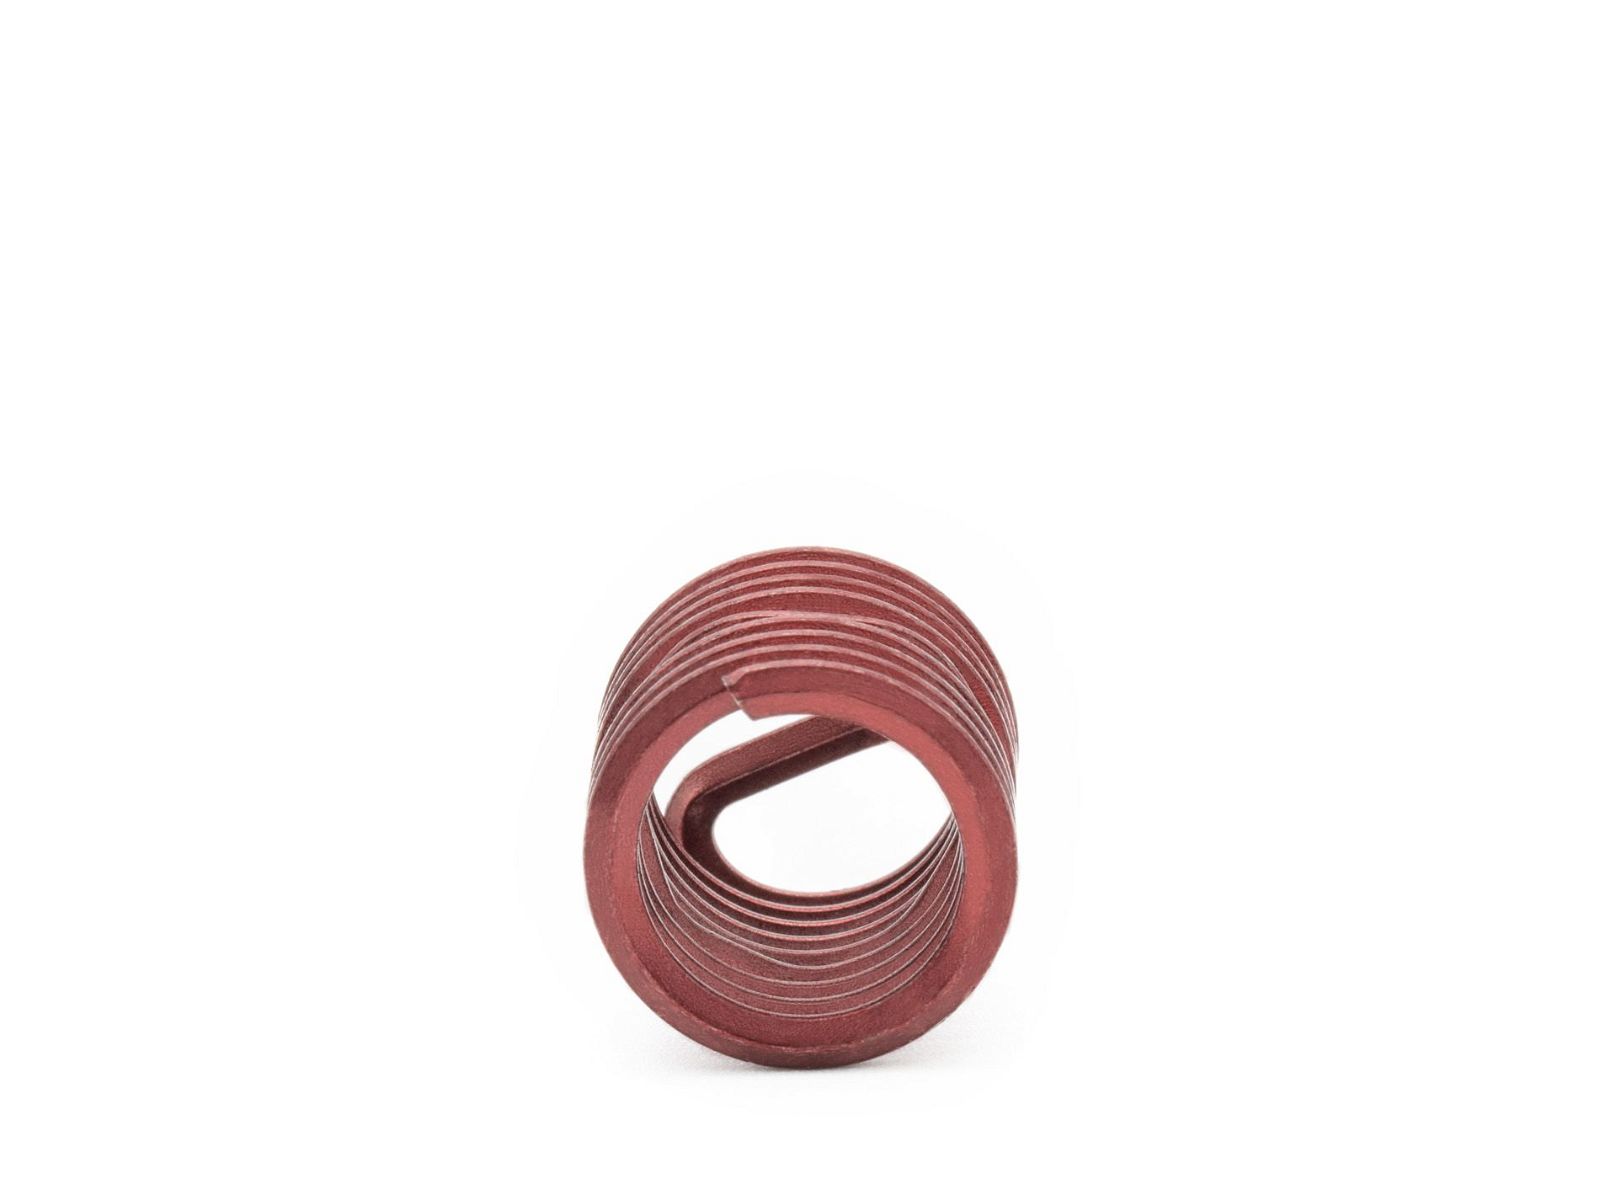 BaerCoil Wire Thread Inserts M 12 x 1.75 - 1.5 D (18 mm) - screw grip (screw locking) - 10 pcs.